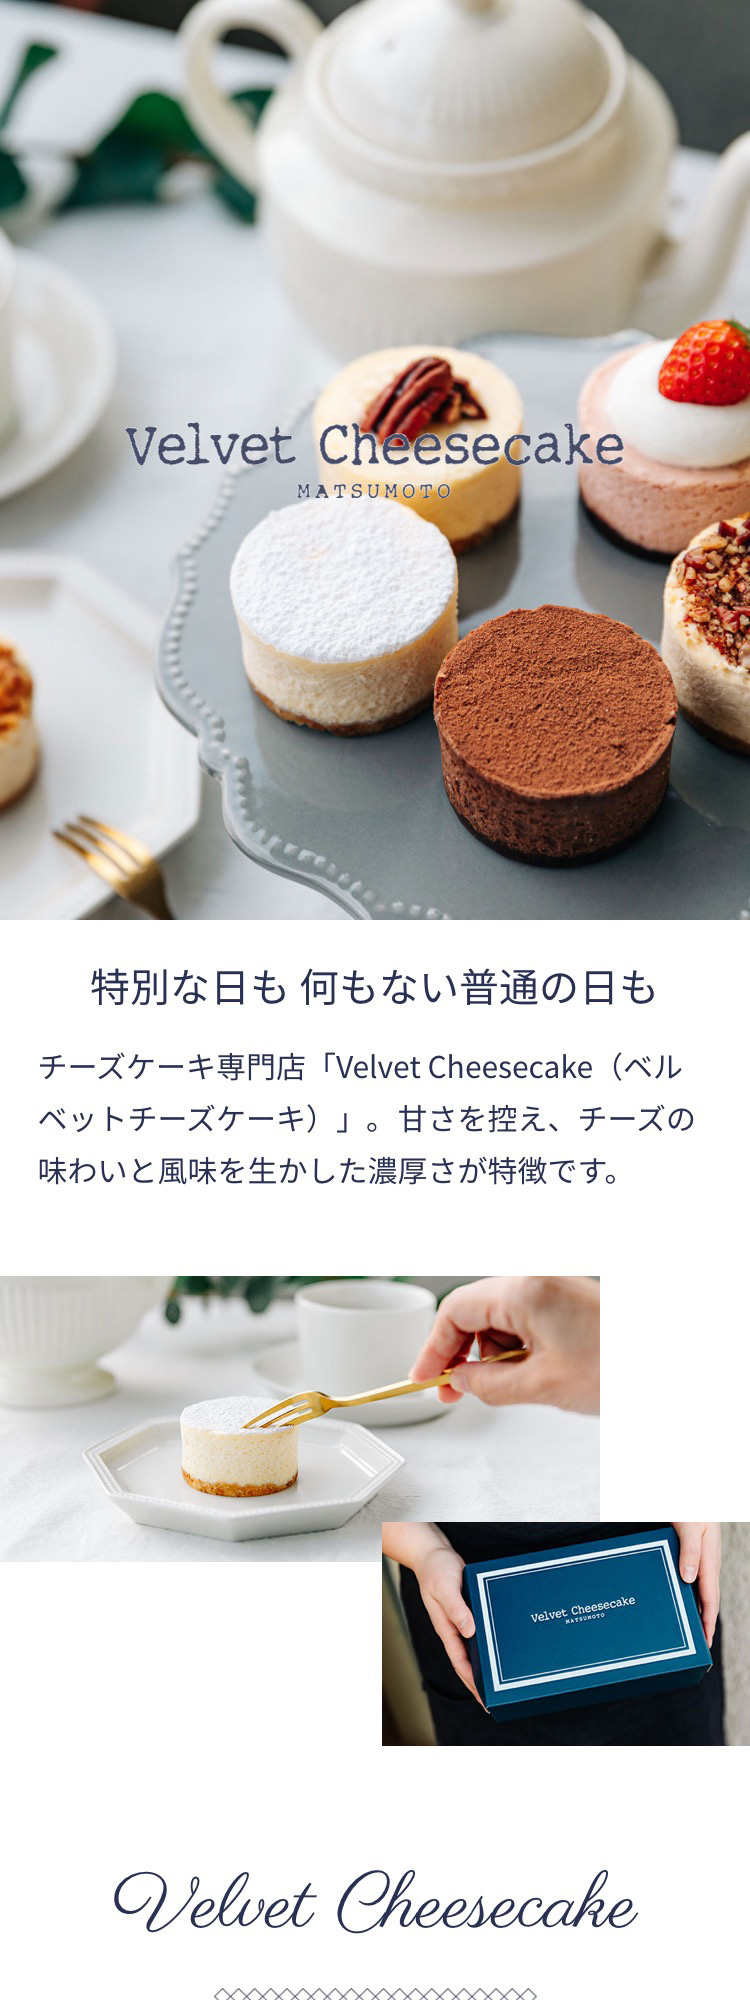 Velvet Cheesecake